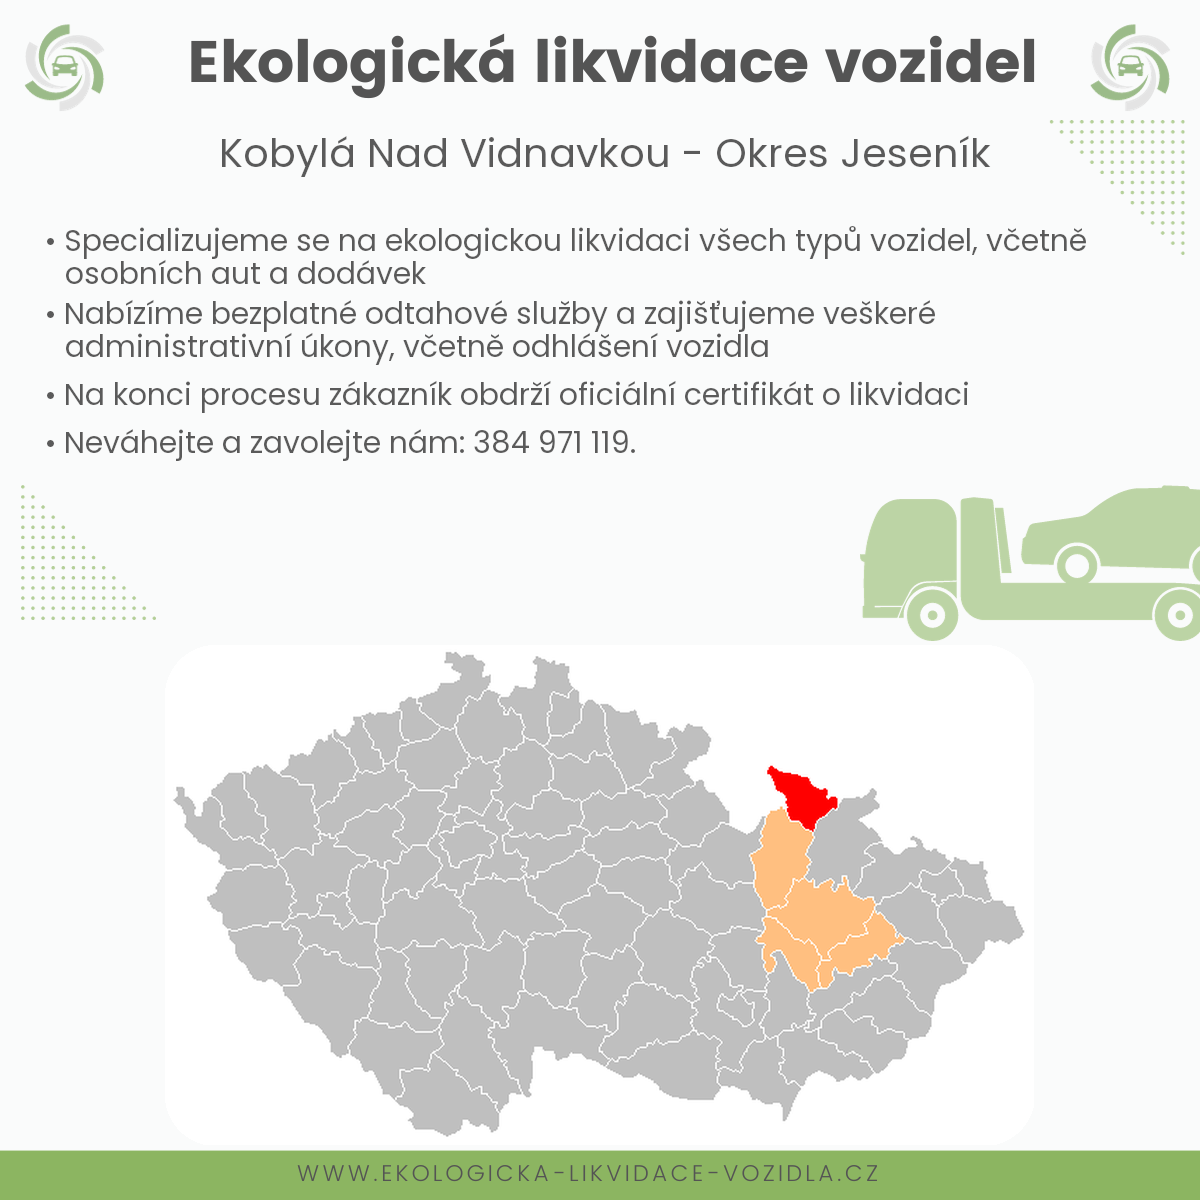 likvidace vozidel - Kobylá nad Vidnavkou